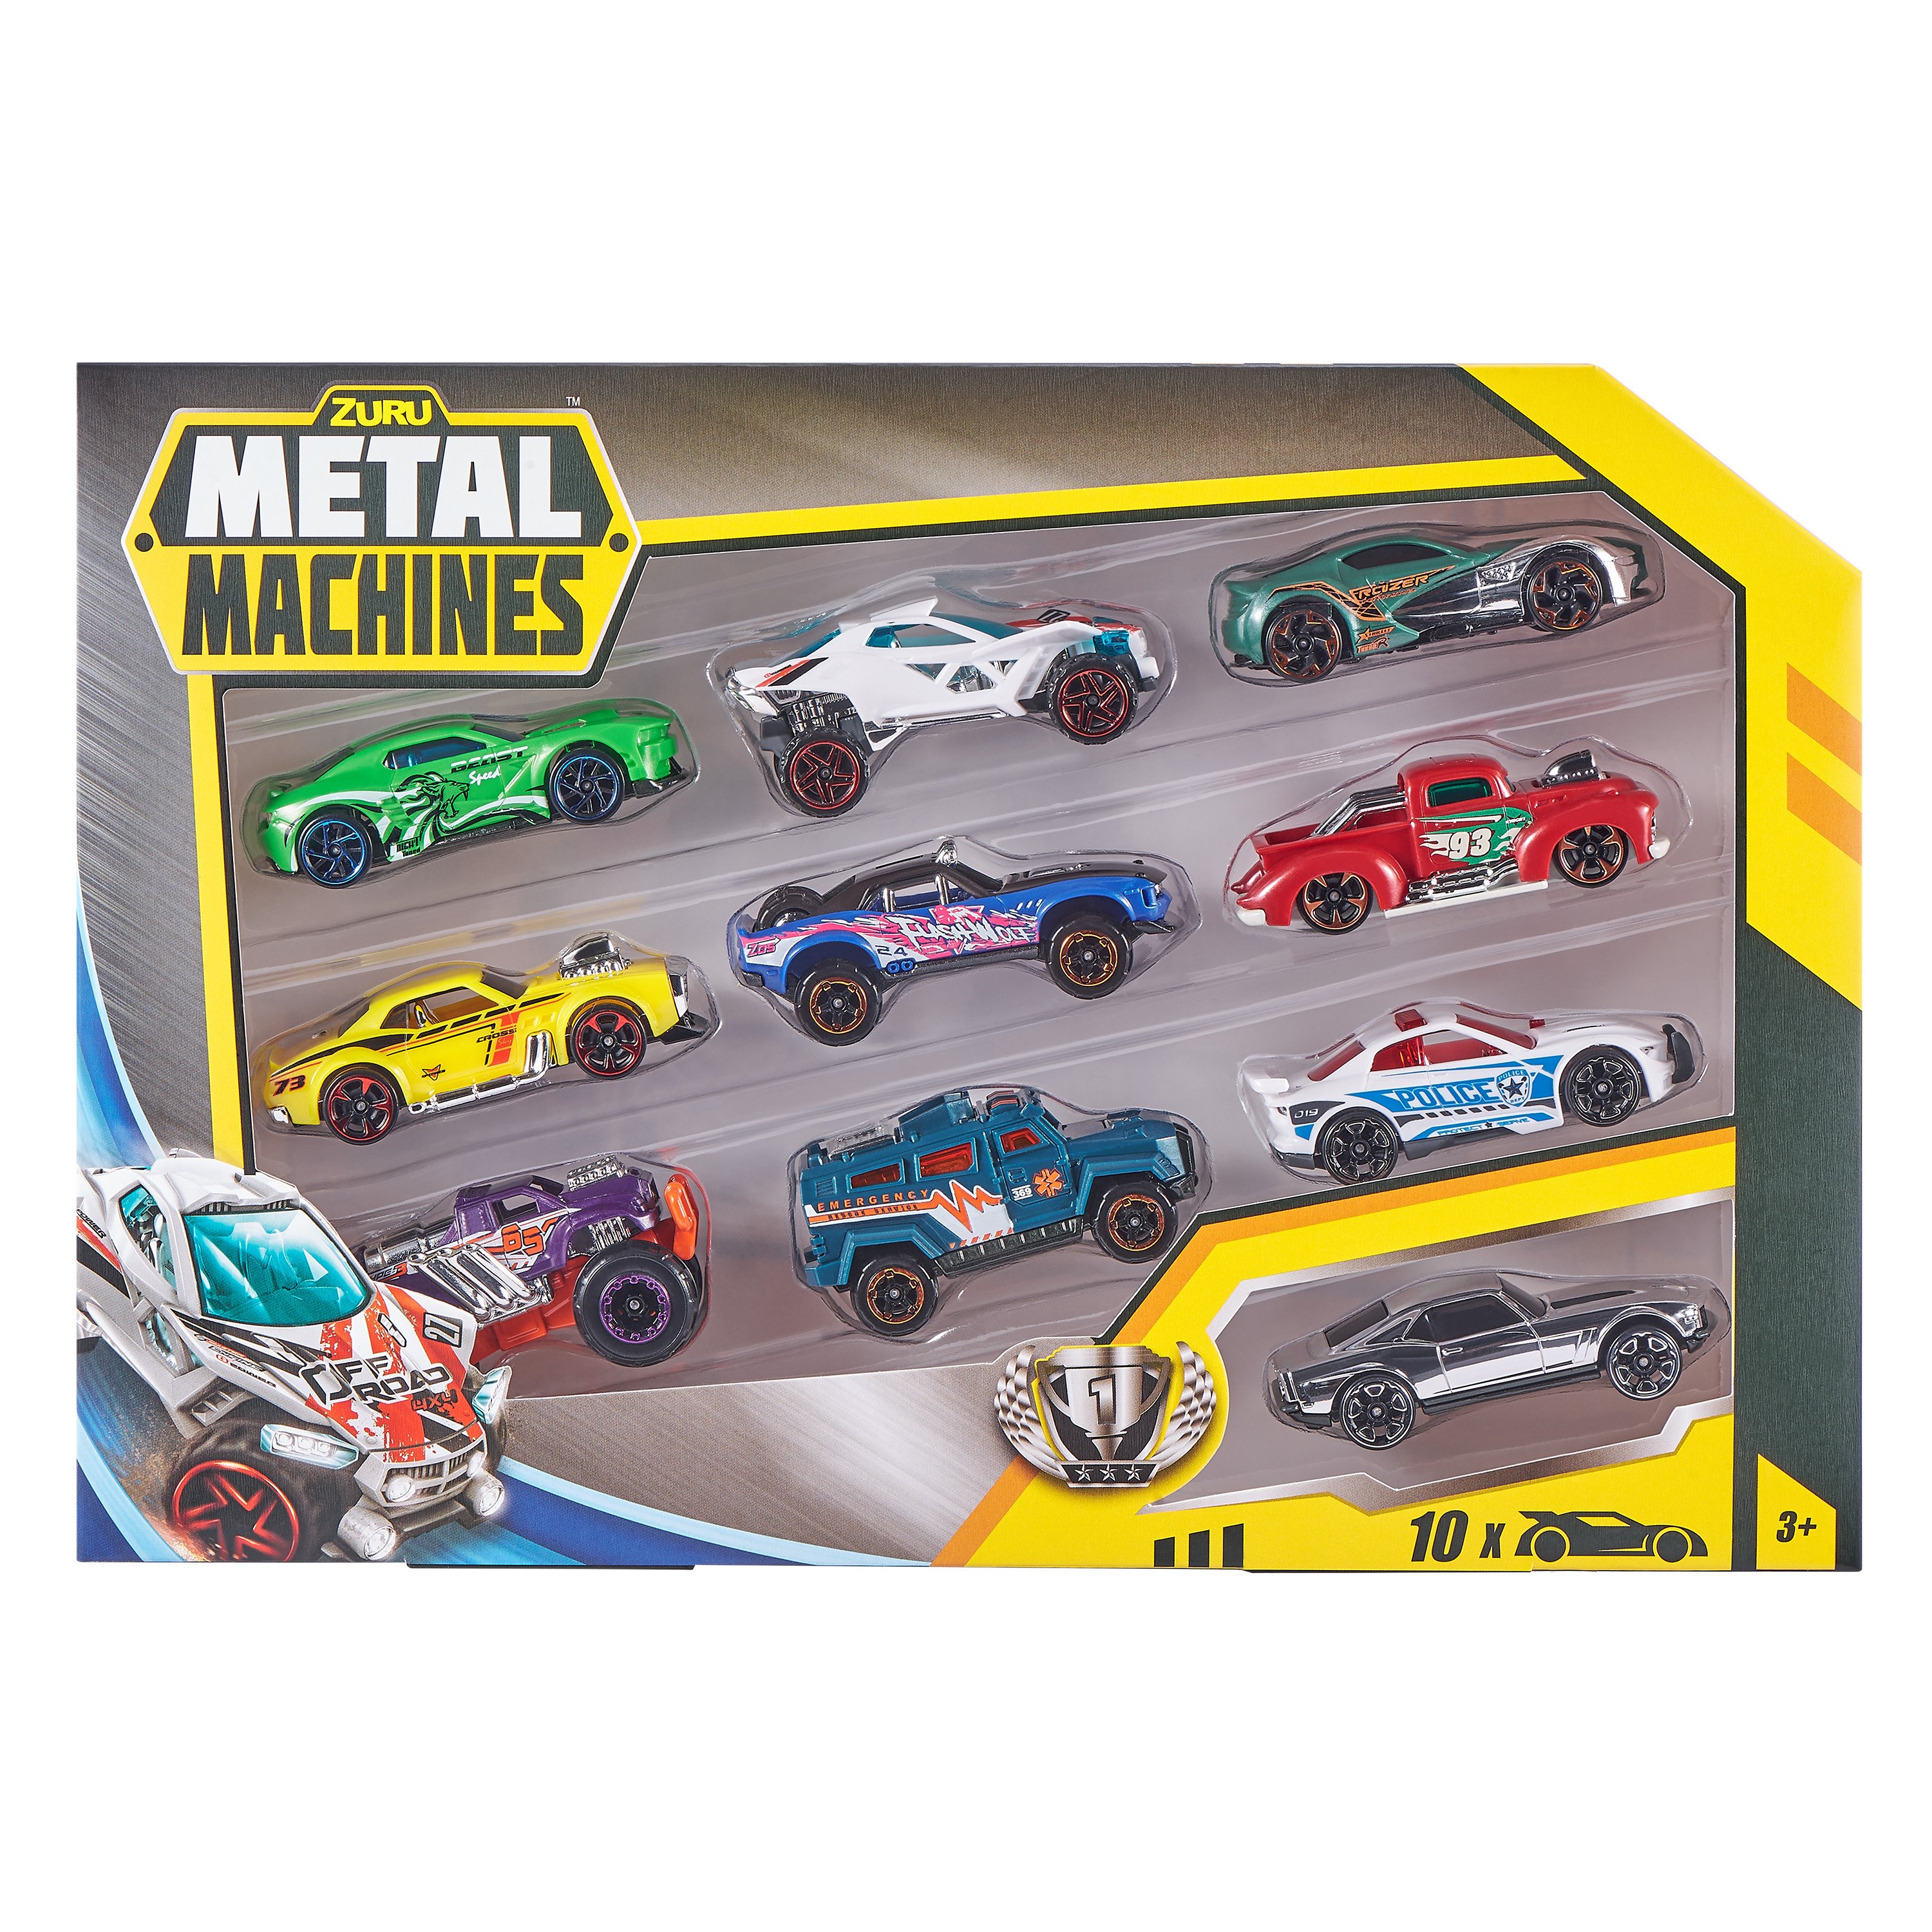 Metal Machines - Cars Series 2 - Multi Pack Car 10 Pack (6750)